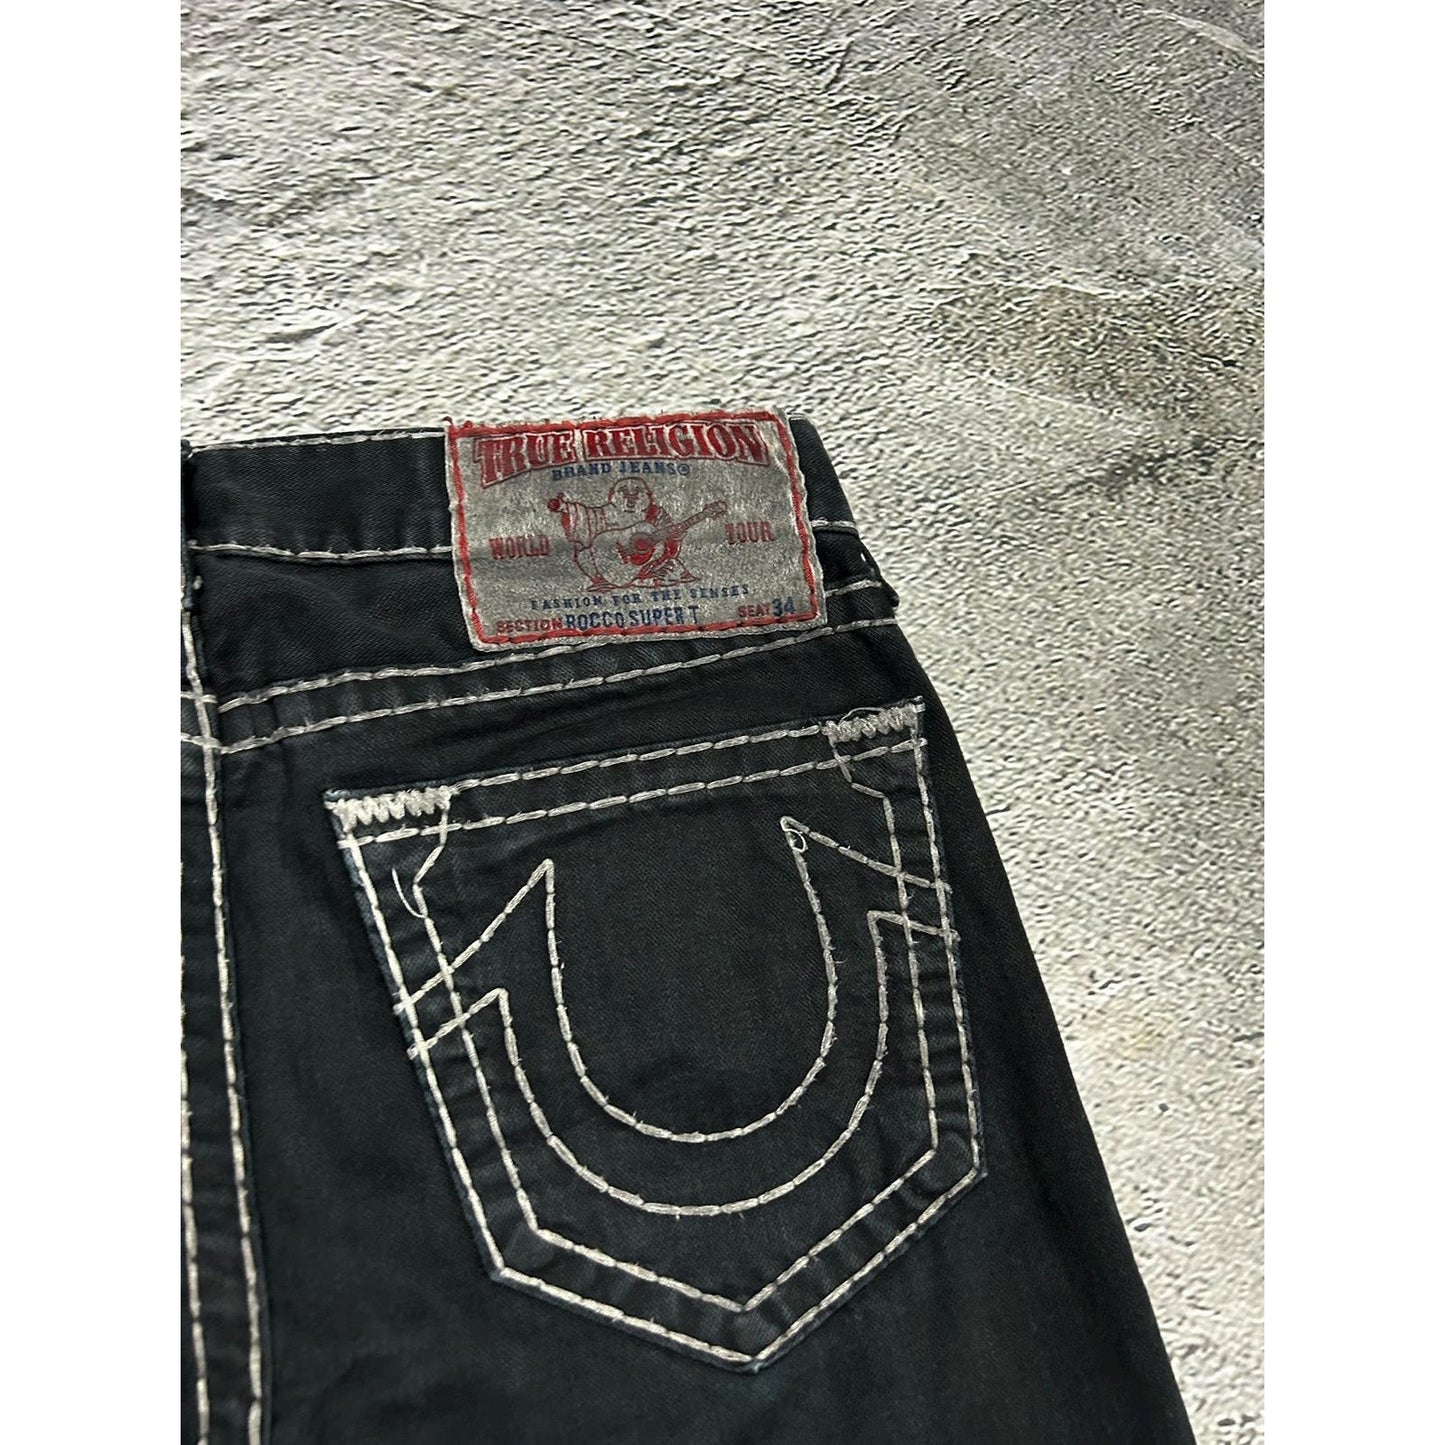 True Religion vintage black jeans denim white stitching